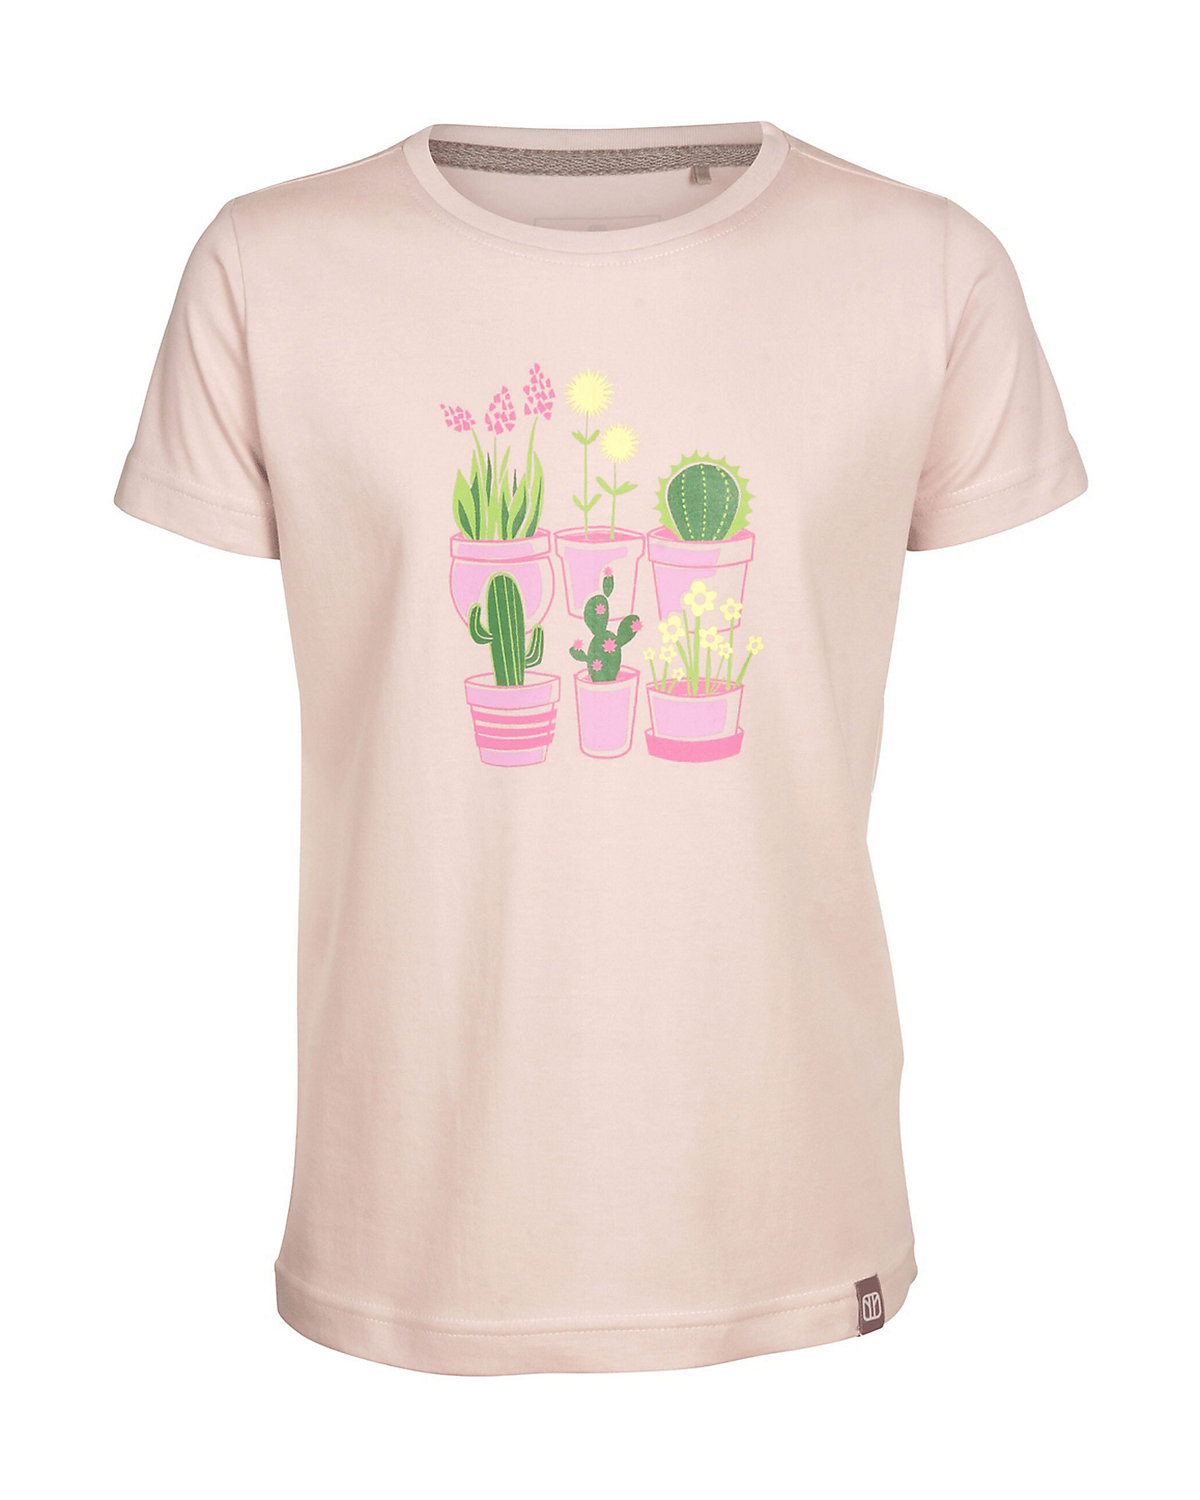 elkline T-Shirt Plantsarefriends mit Rundhalsausschnitt und Blumenprint für Mädchen